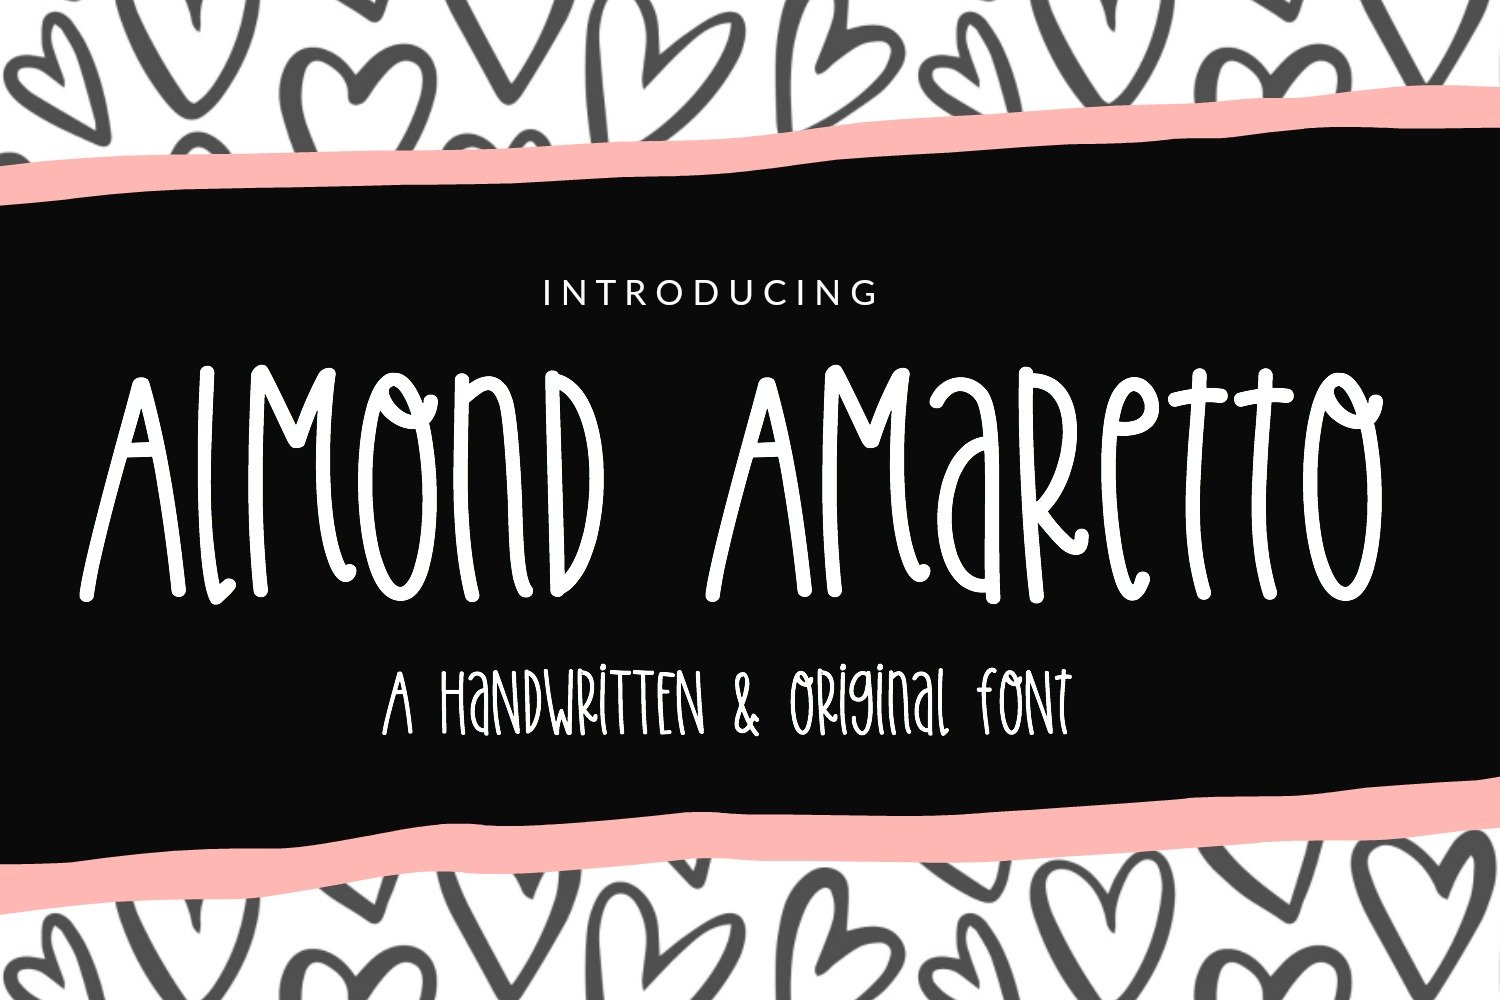 Almond Amaretto Handwritten Font cover image.